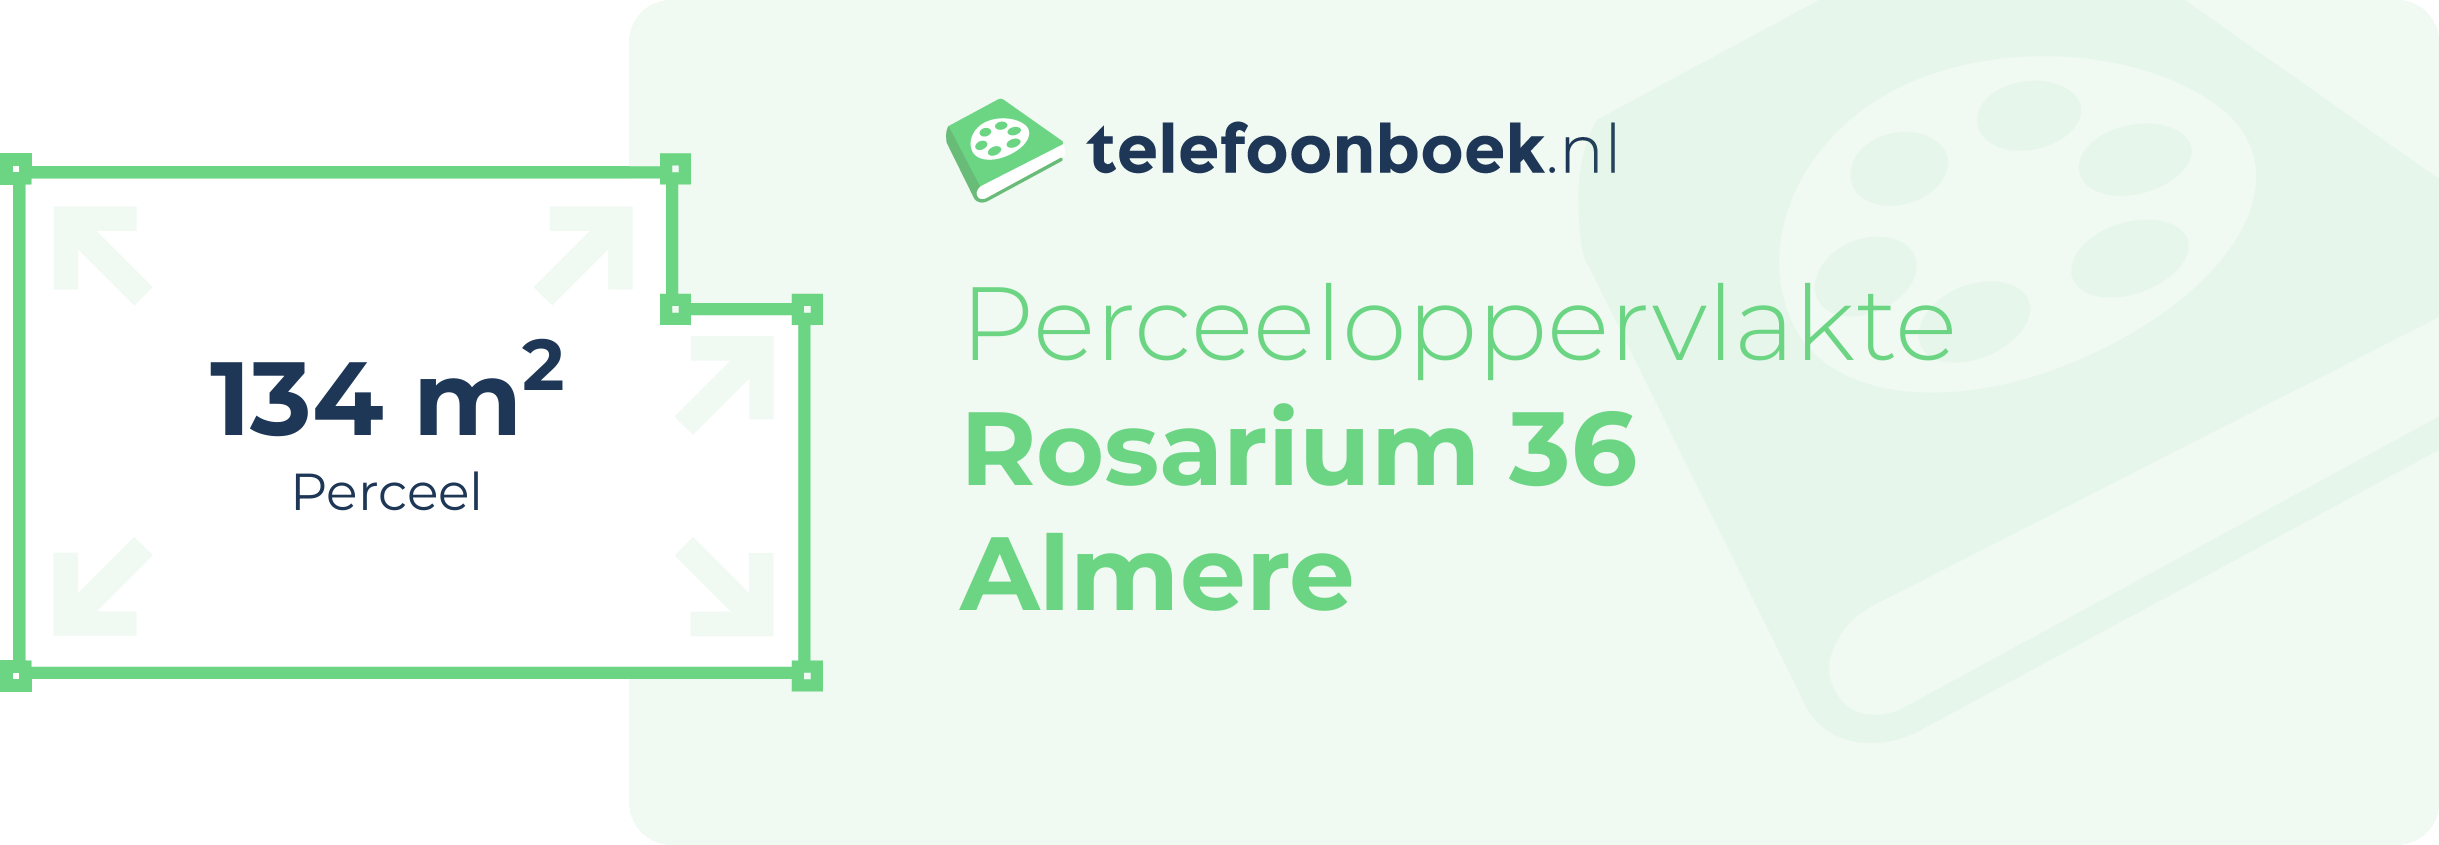 Perceeloppervlakte Rosarium 36 Almere